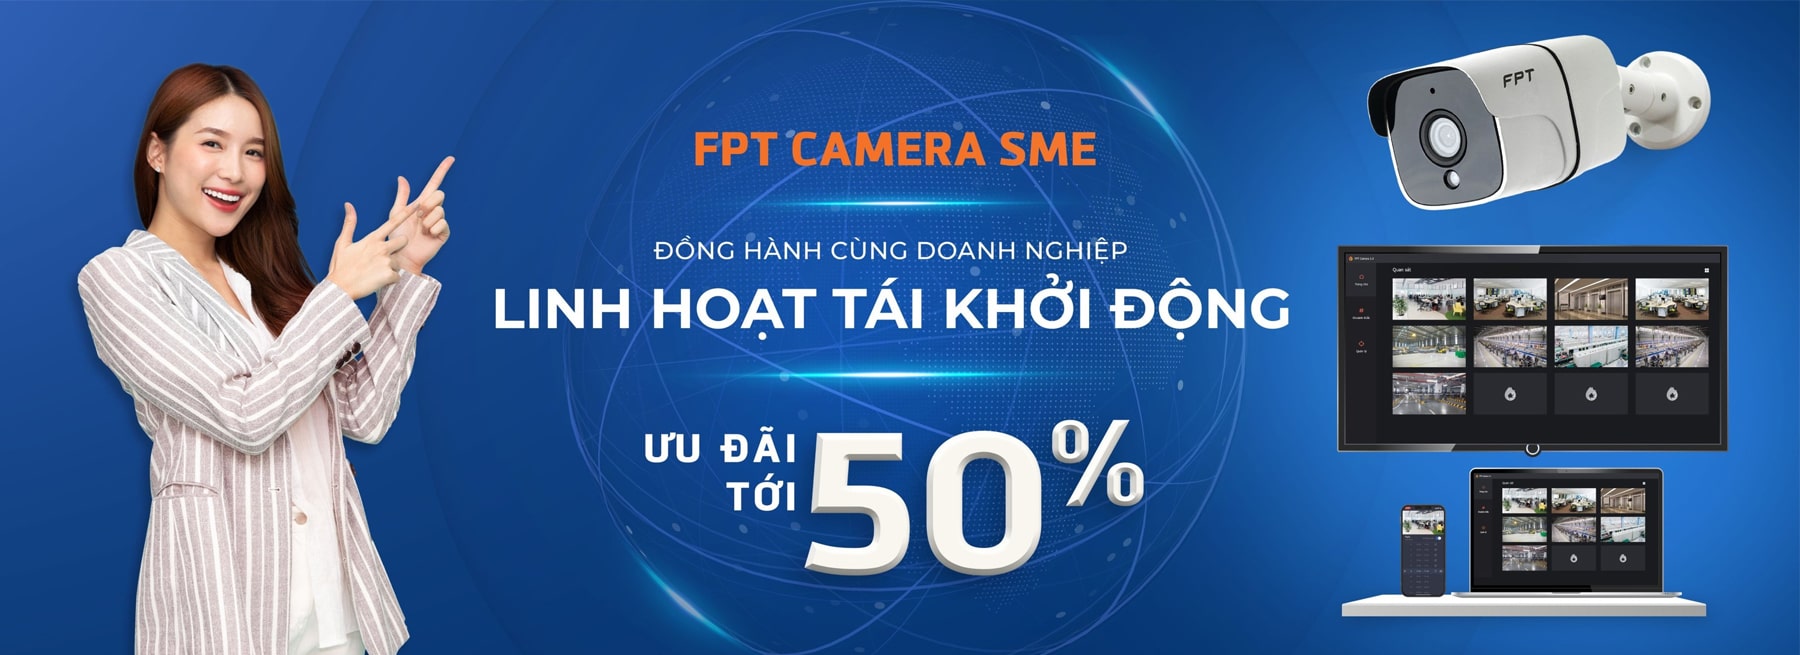 FPT Camera SME 